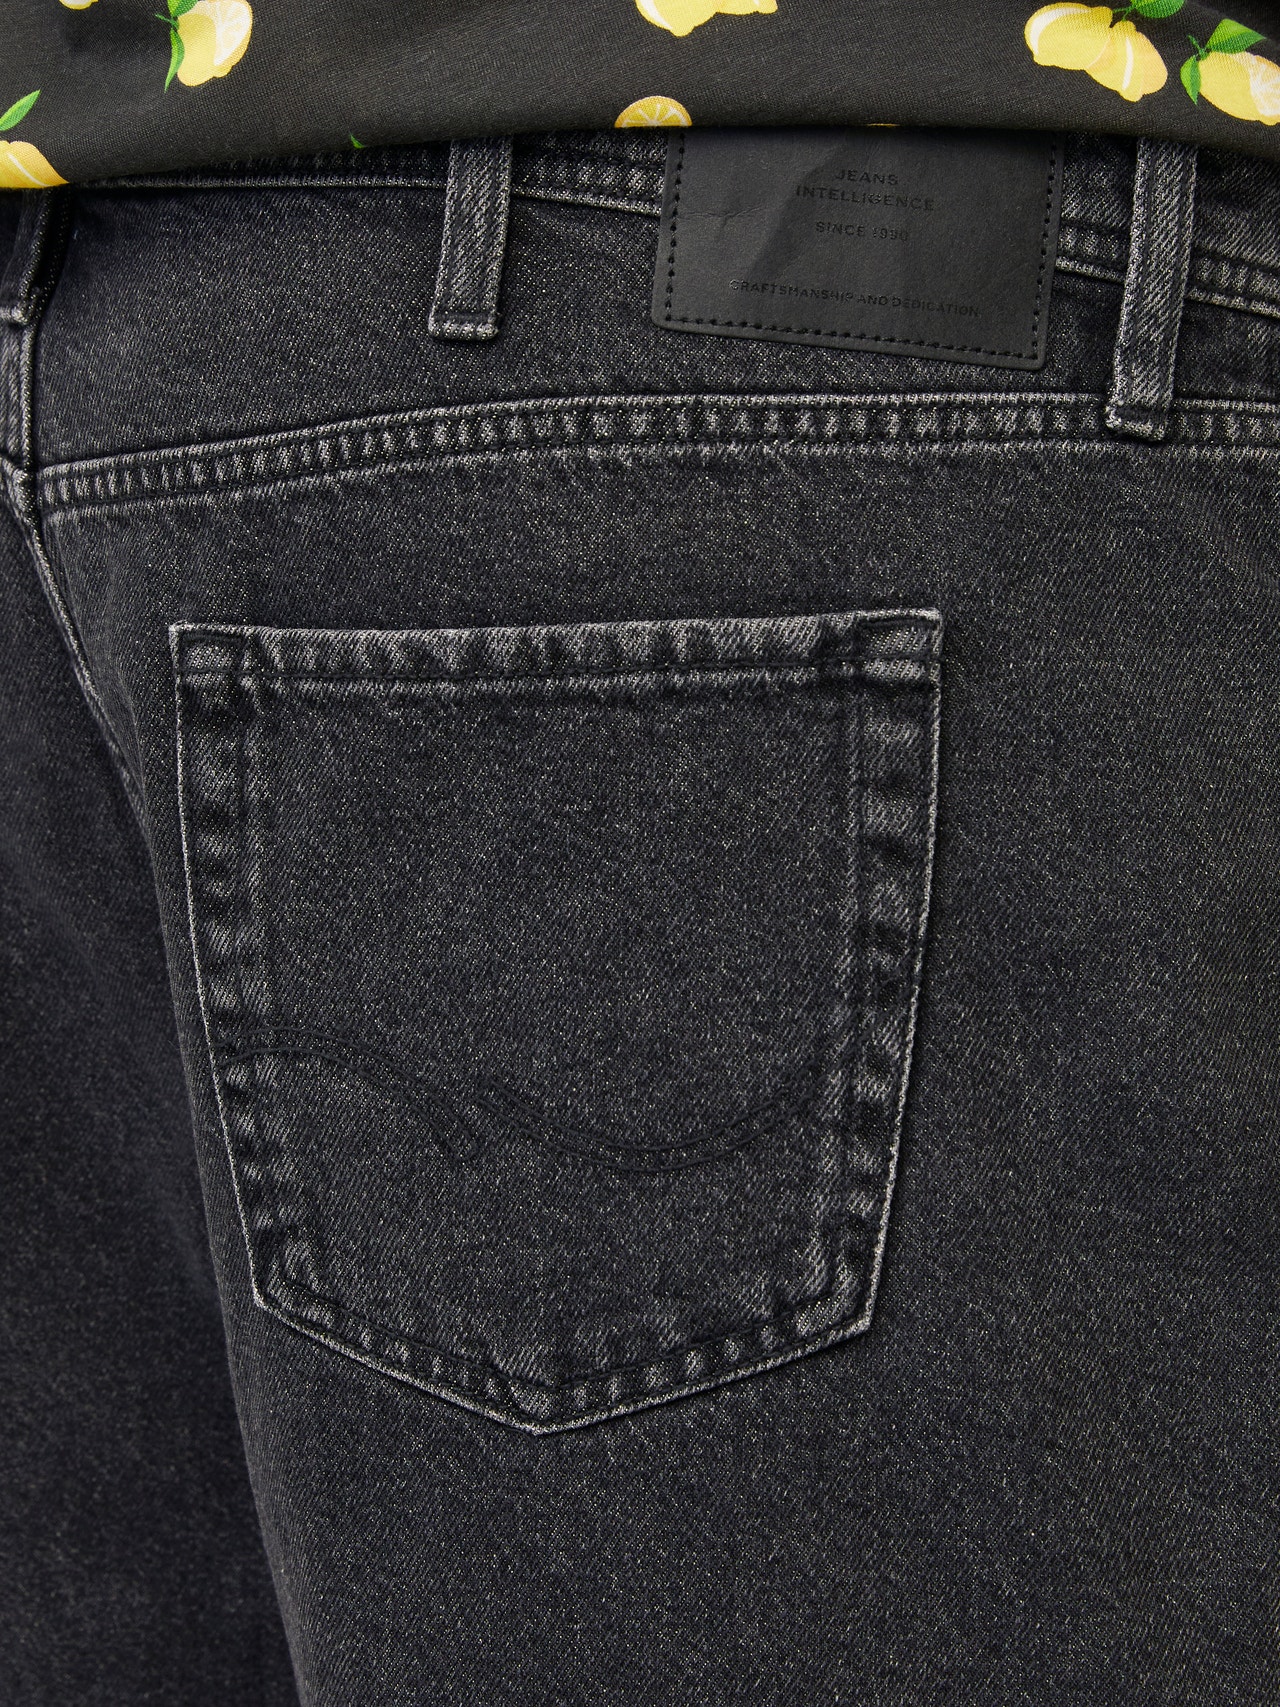 Jack & Jones Plus Size Loose Fit Løse shorts -Black Denim - 12257459